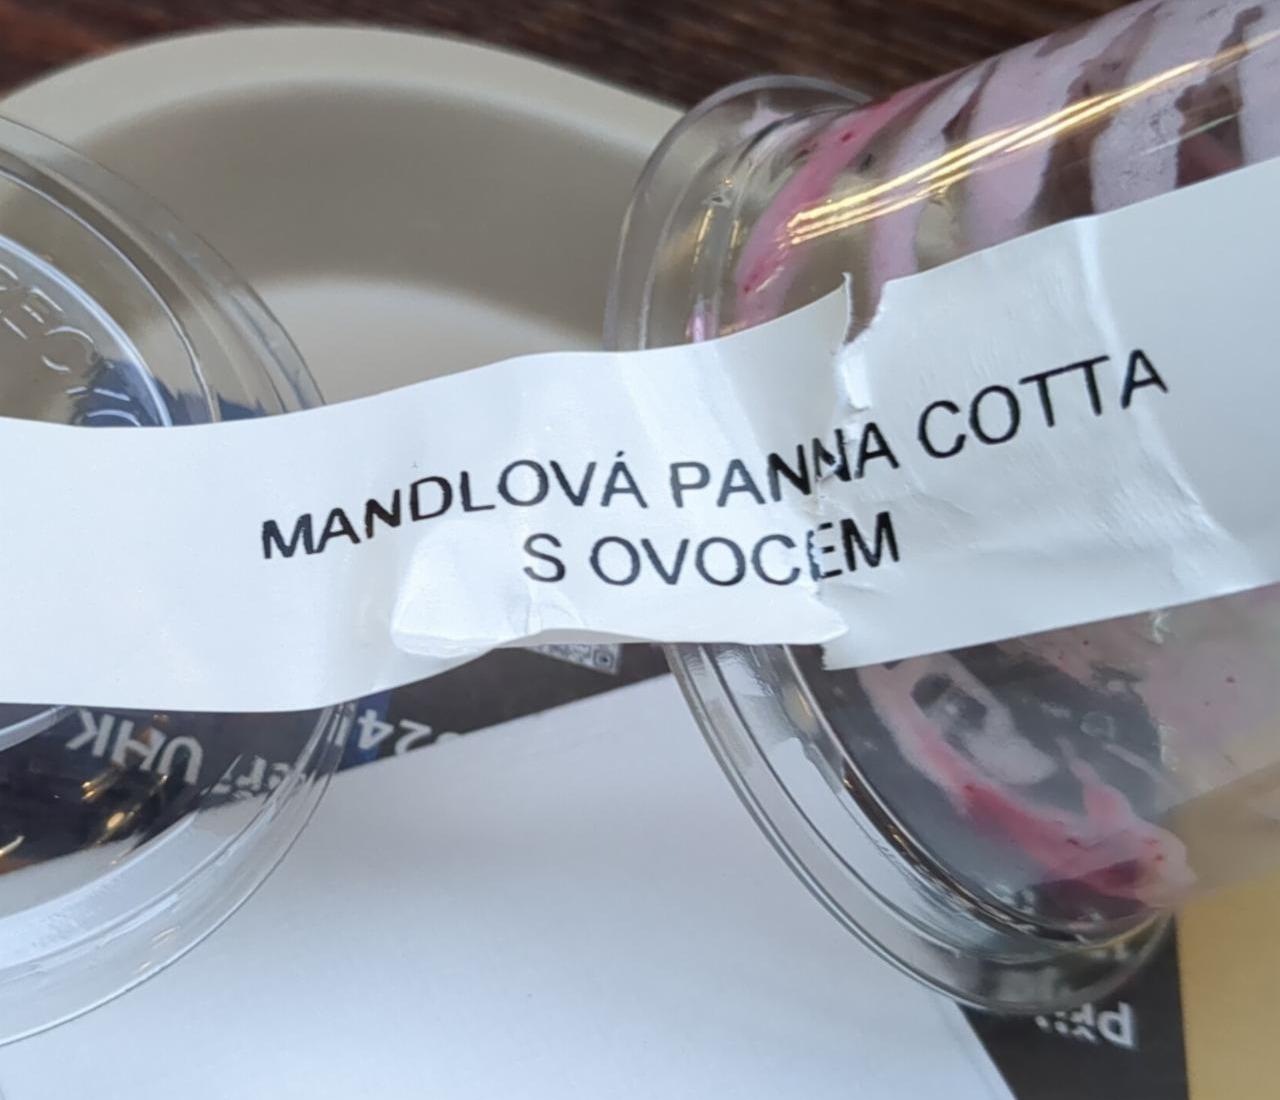 Fotografie - Mandlová panna cotta s ovocem Crosscafe 2